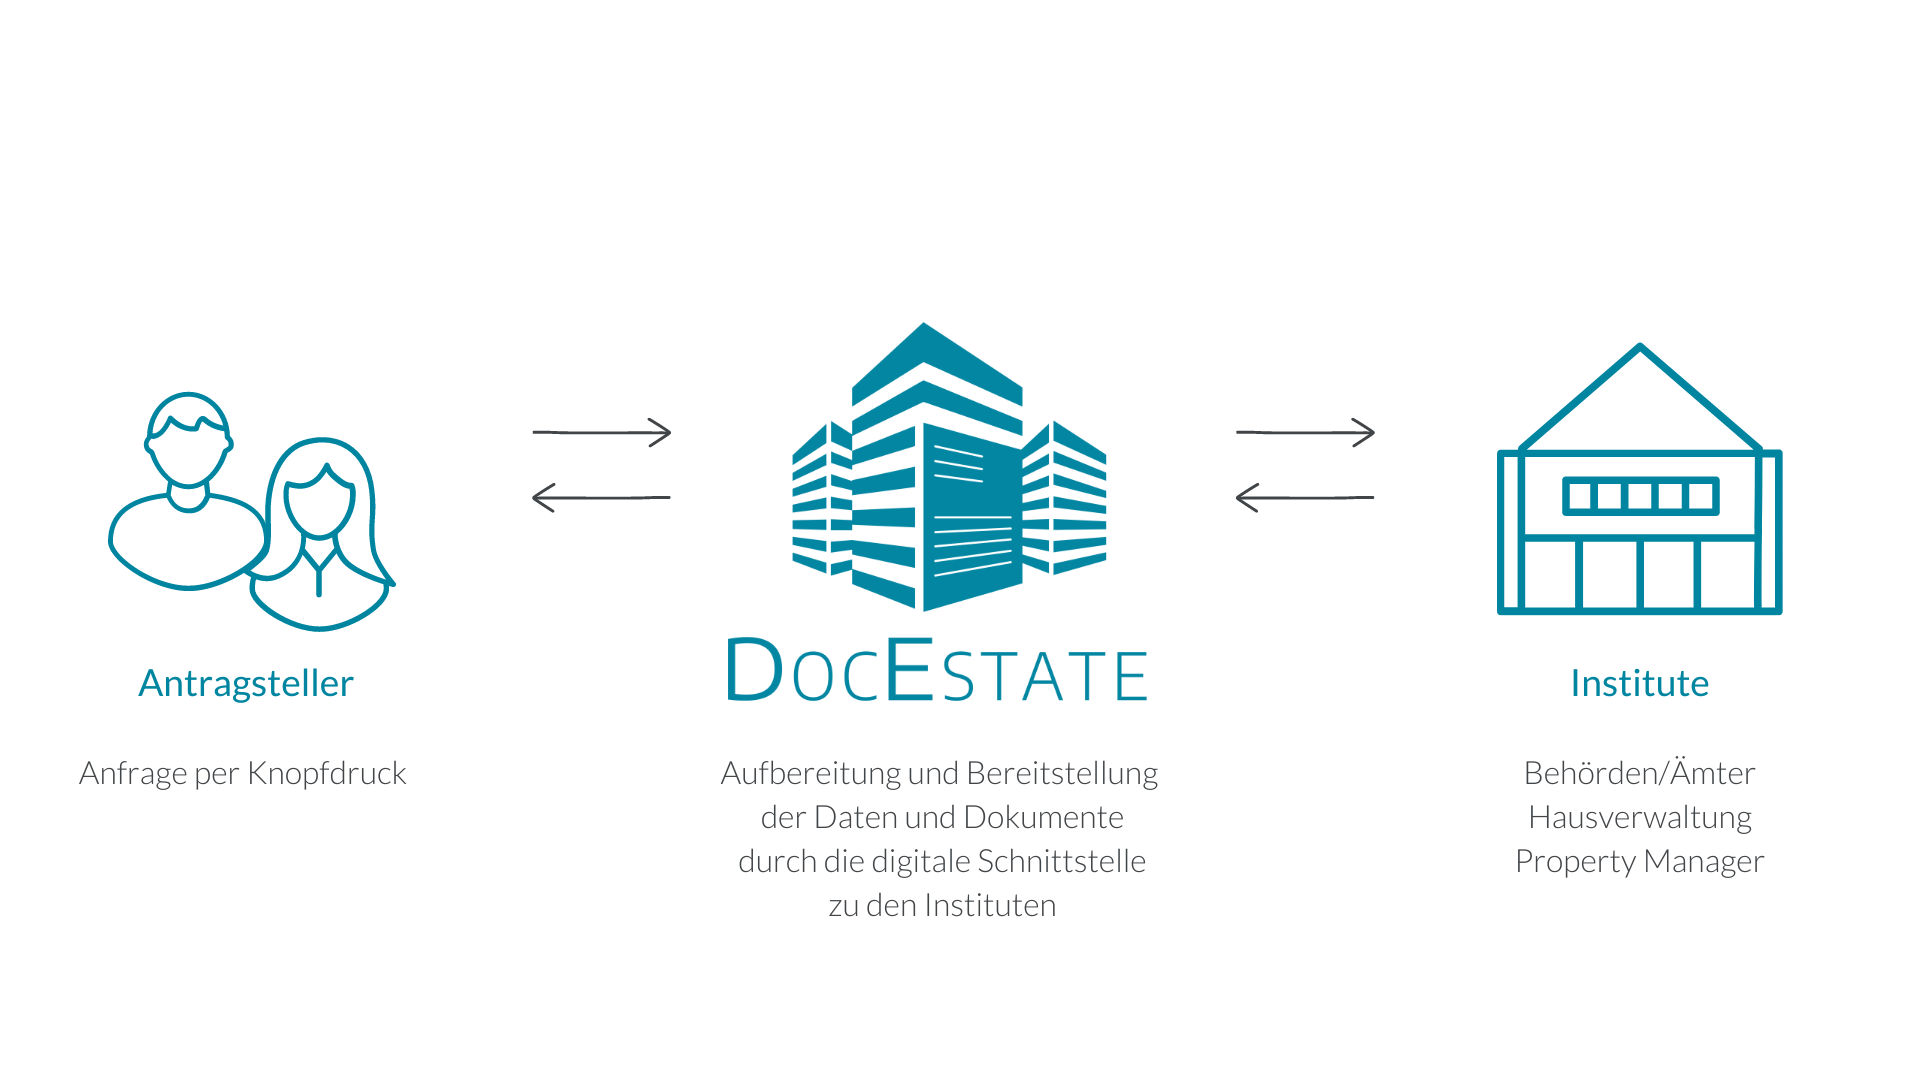 DocEstate - Vorgehensweise